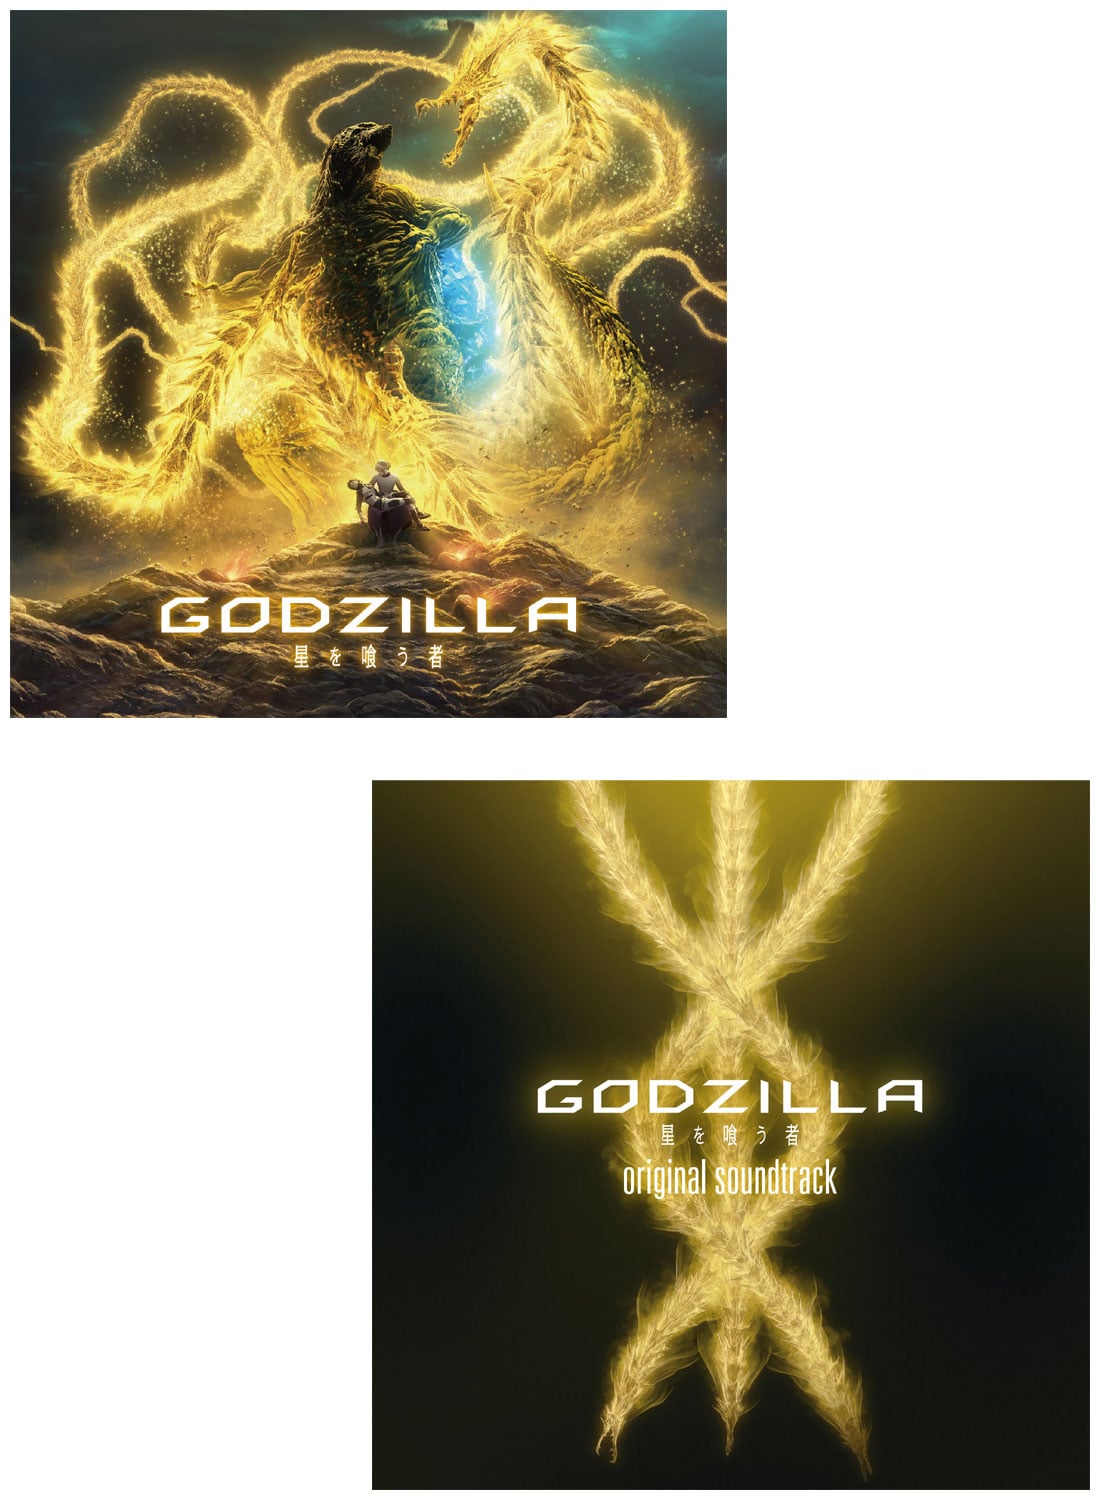 アニメーション映画 Godzilla 星を喰う者 主題歌 Live And Die アニメ盤 オリジナルサウンドトラック セット Cd 作品一覧 Toho Animation Store 東宝アニメーションストア